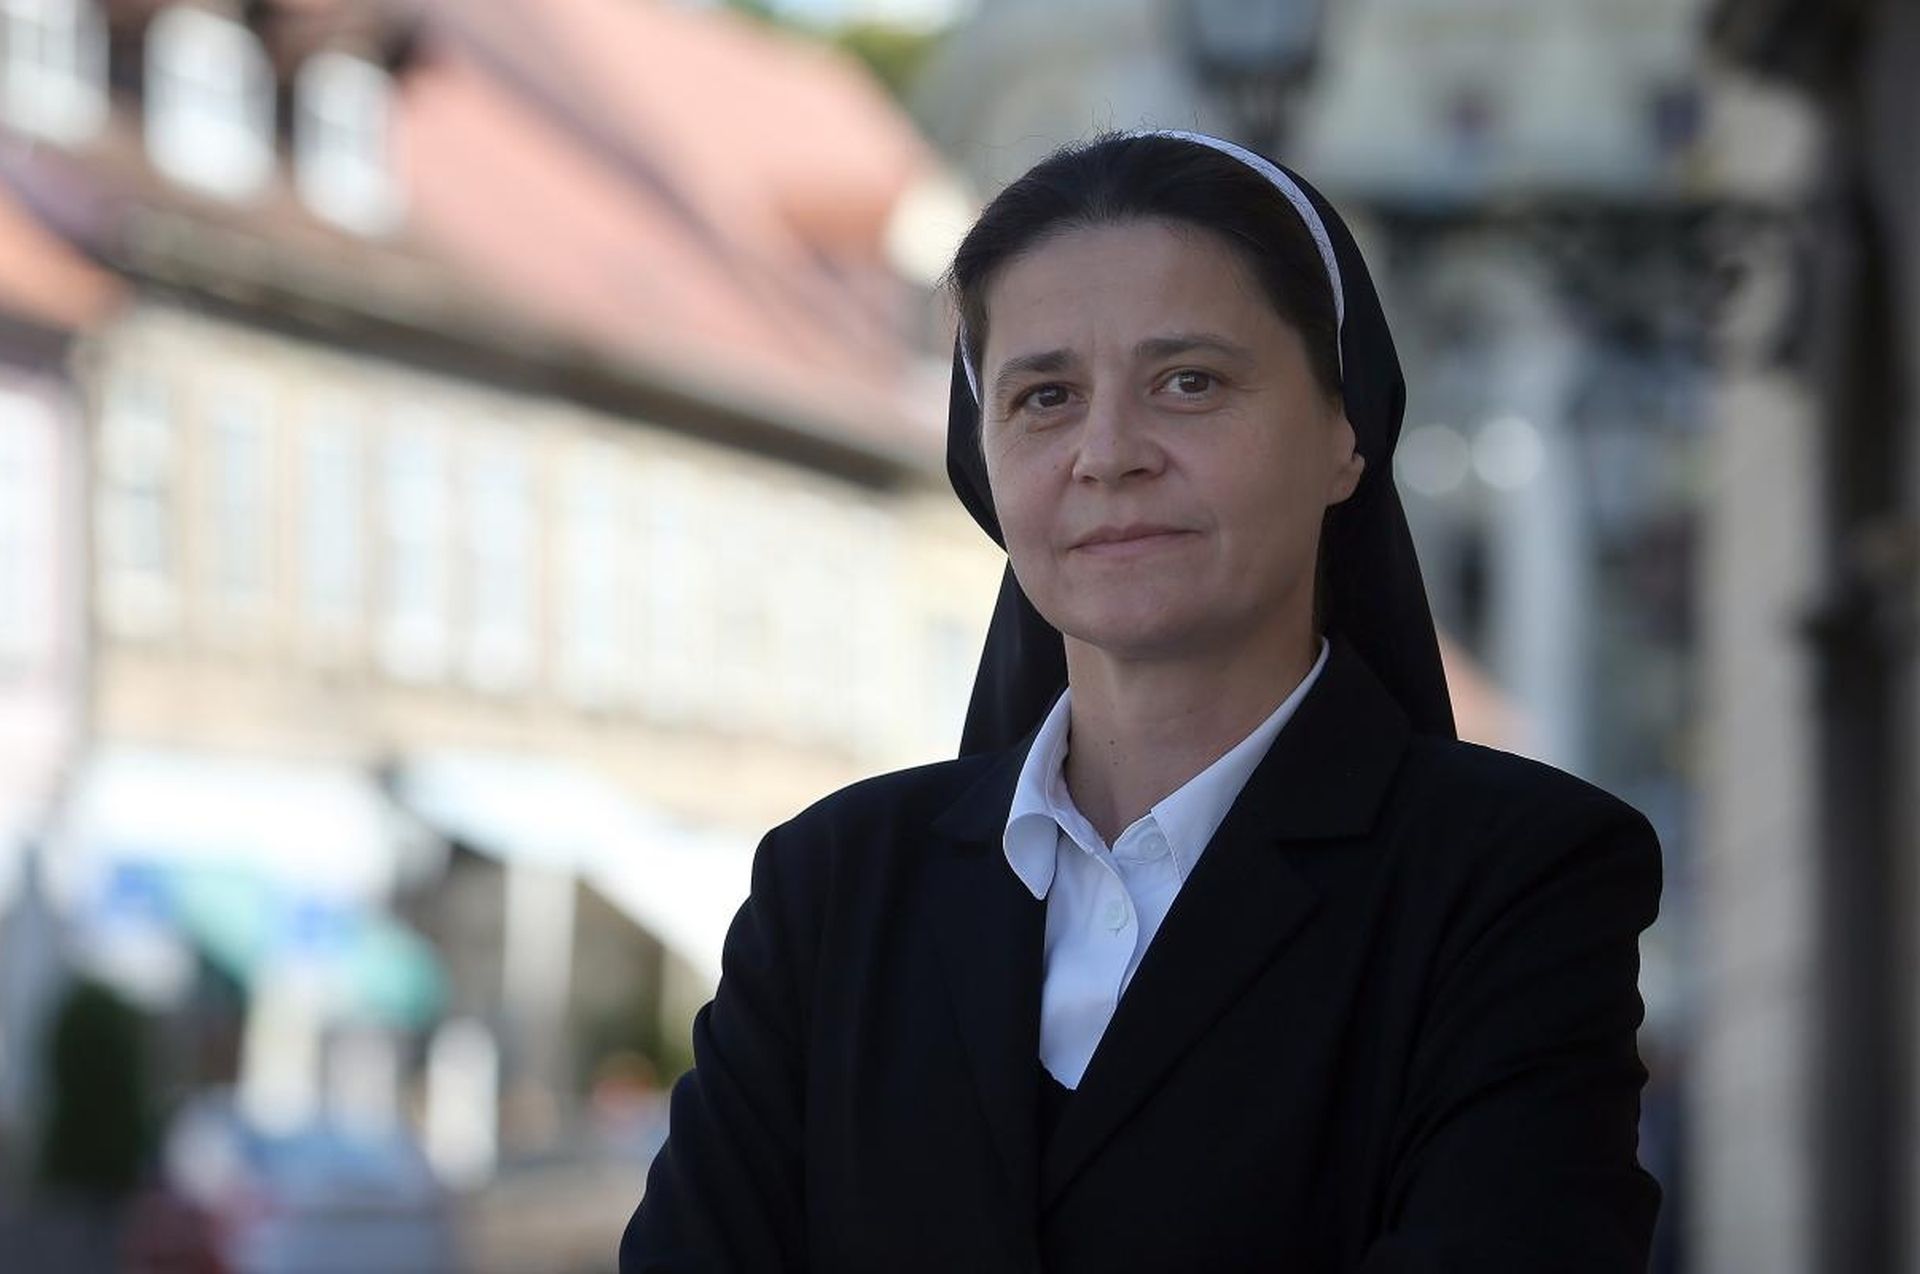 04.09.2017., Zagreb - Sestra Jelena Loncar, ravnateljica Caritasa Zagrebacke nadbiskupije.
Photo: Dalibor Urukalovic/PIXSELL